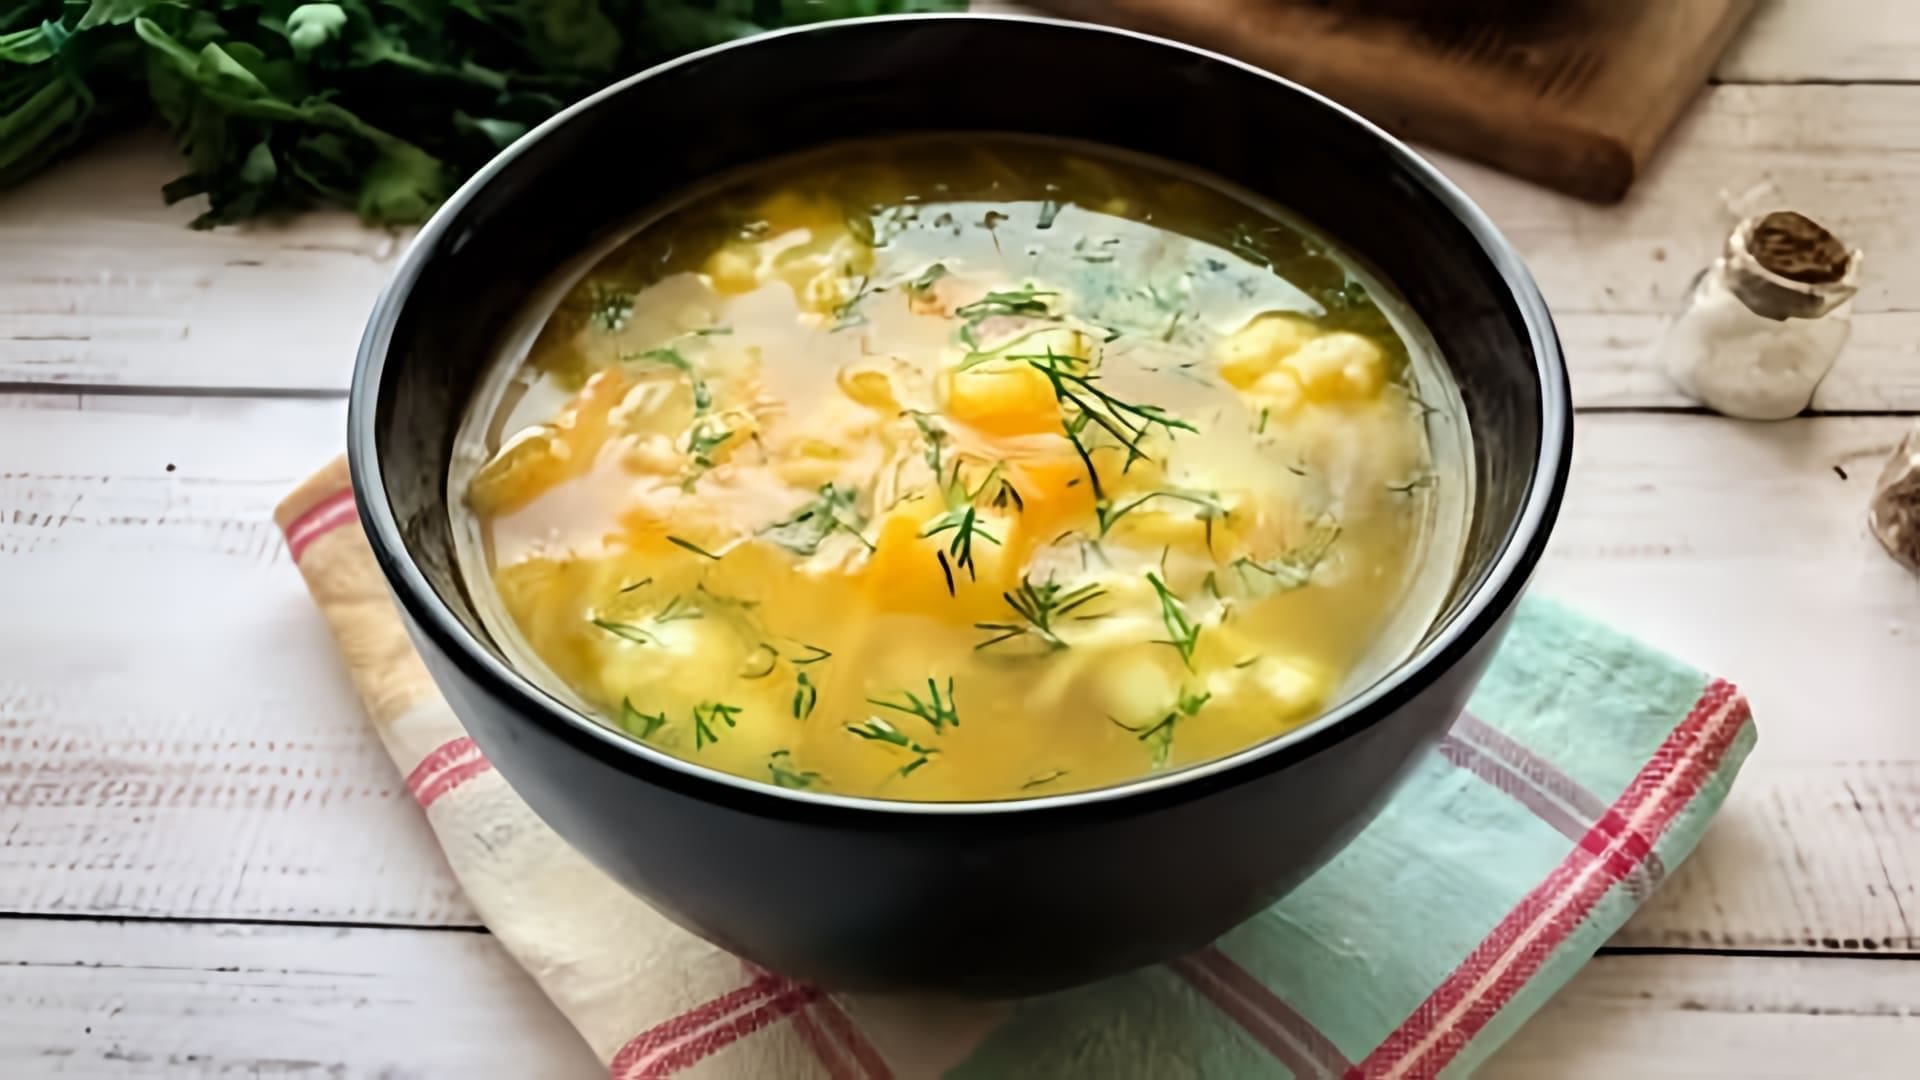 В этом видео демонстрируется рецепт приготовления вкусного овощного супа из цветной капусты с вермишелью